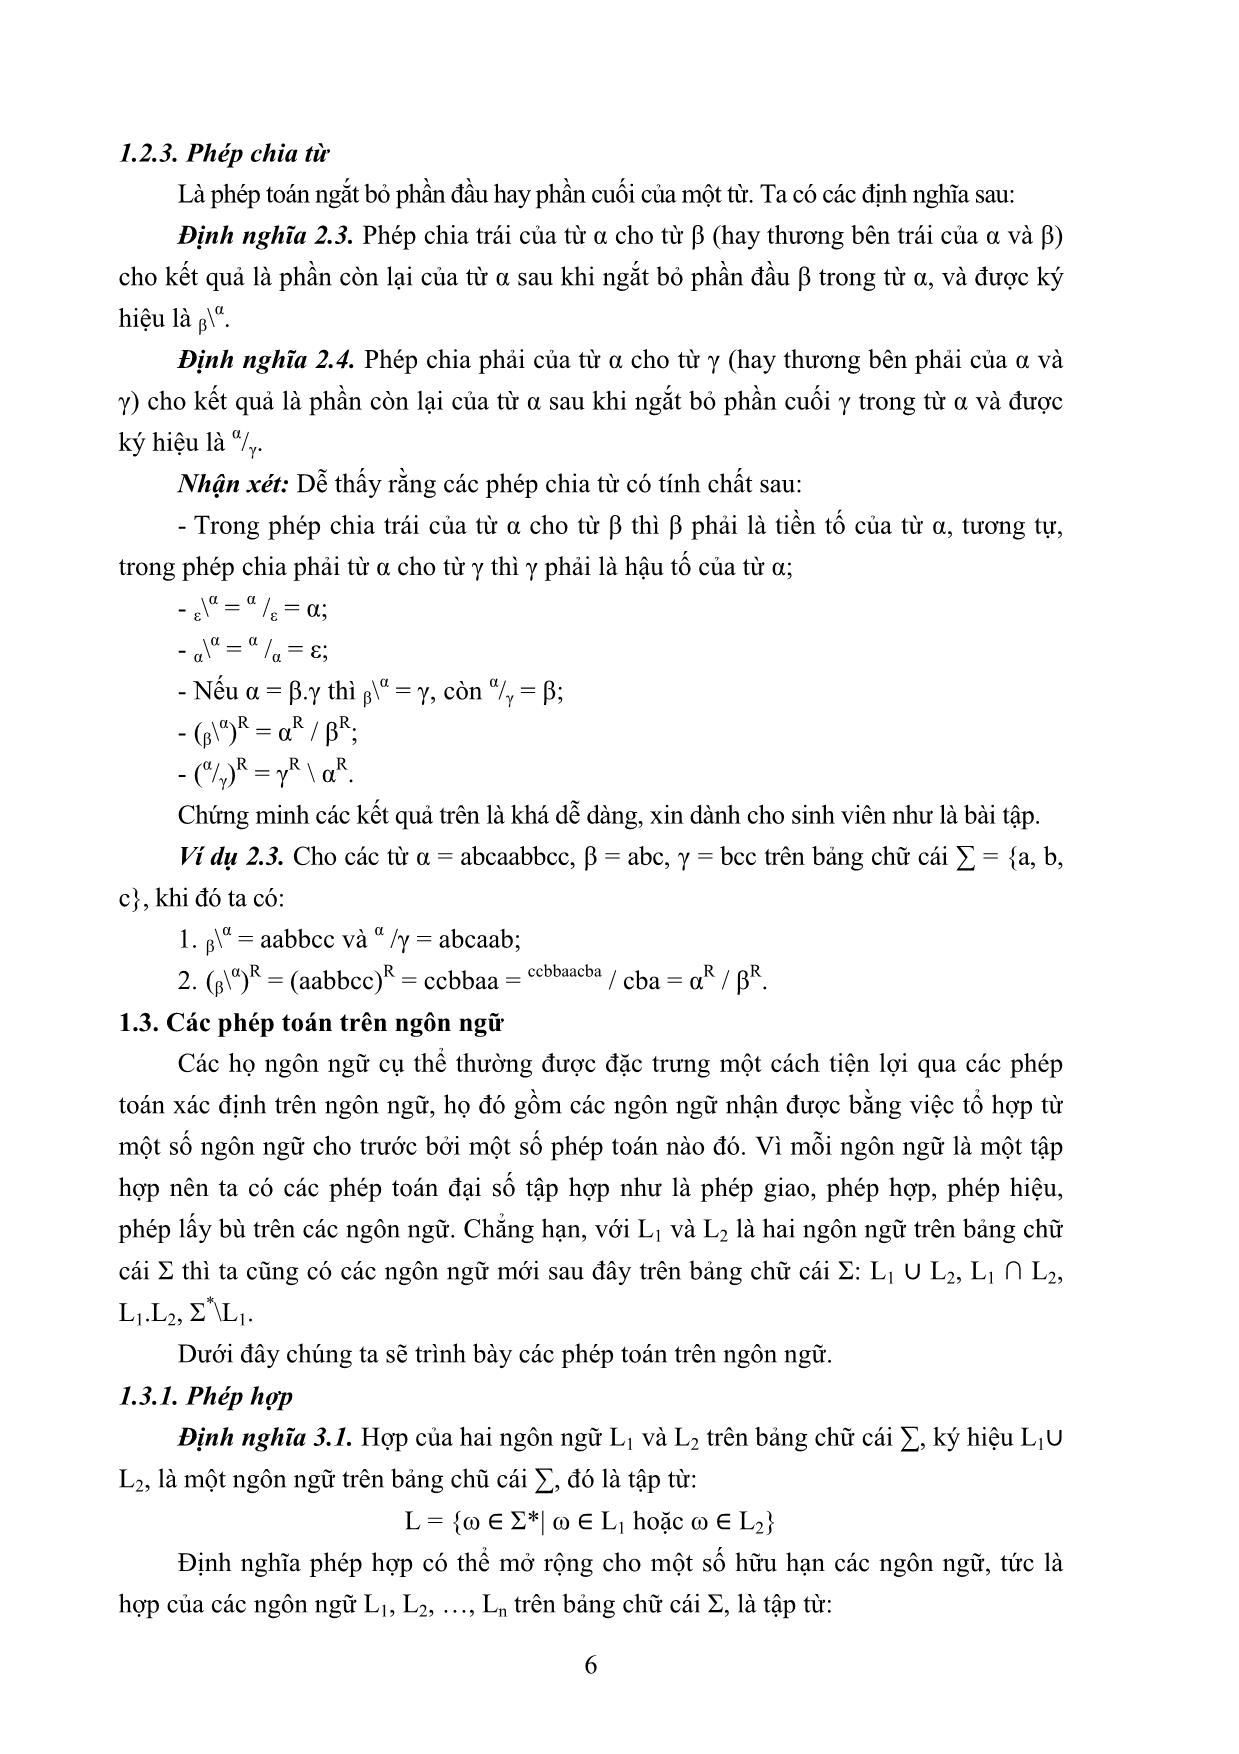 Giáo trình môn Ngôn ngữ hình thức trang 10